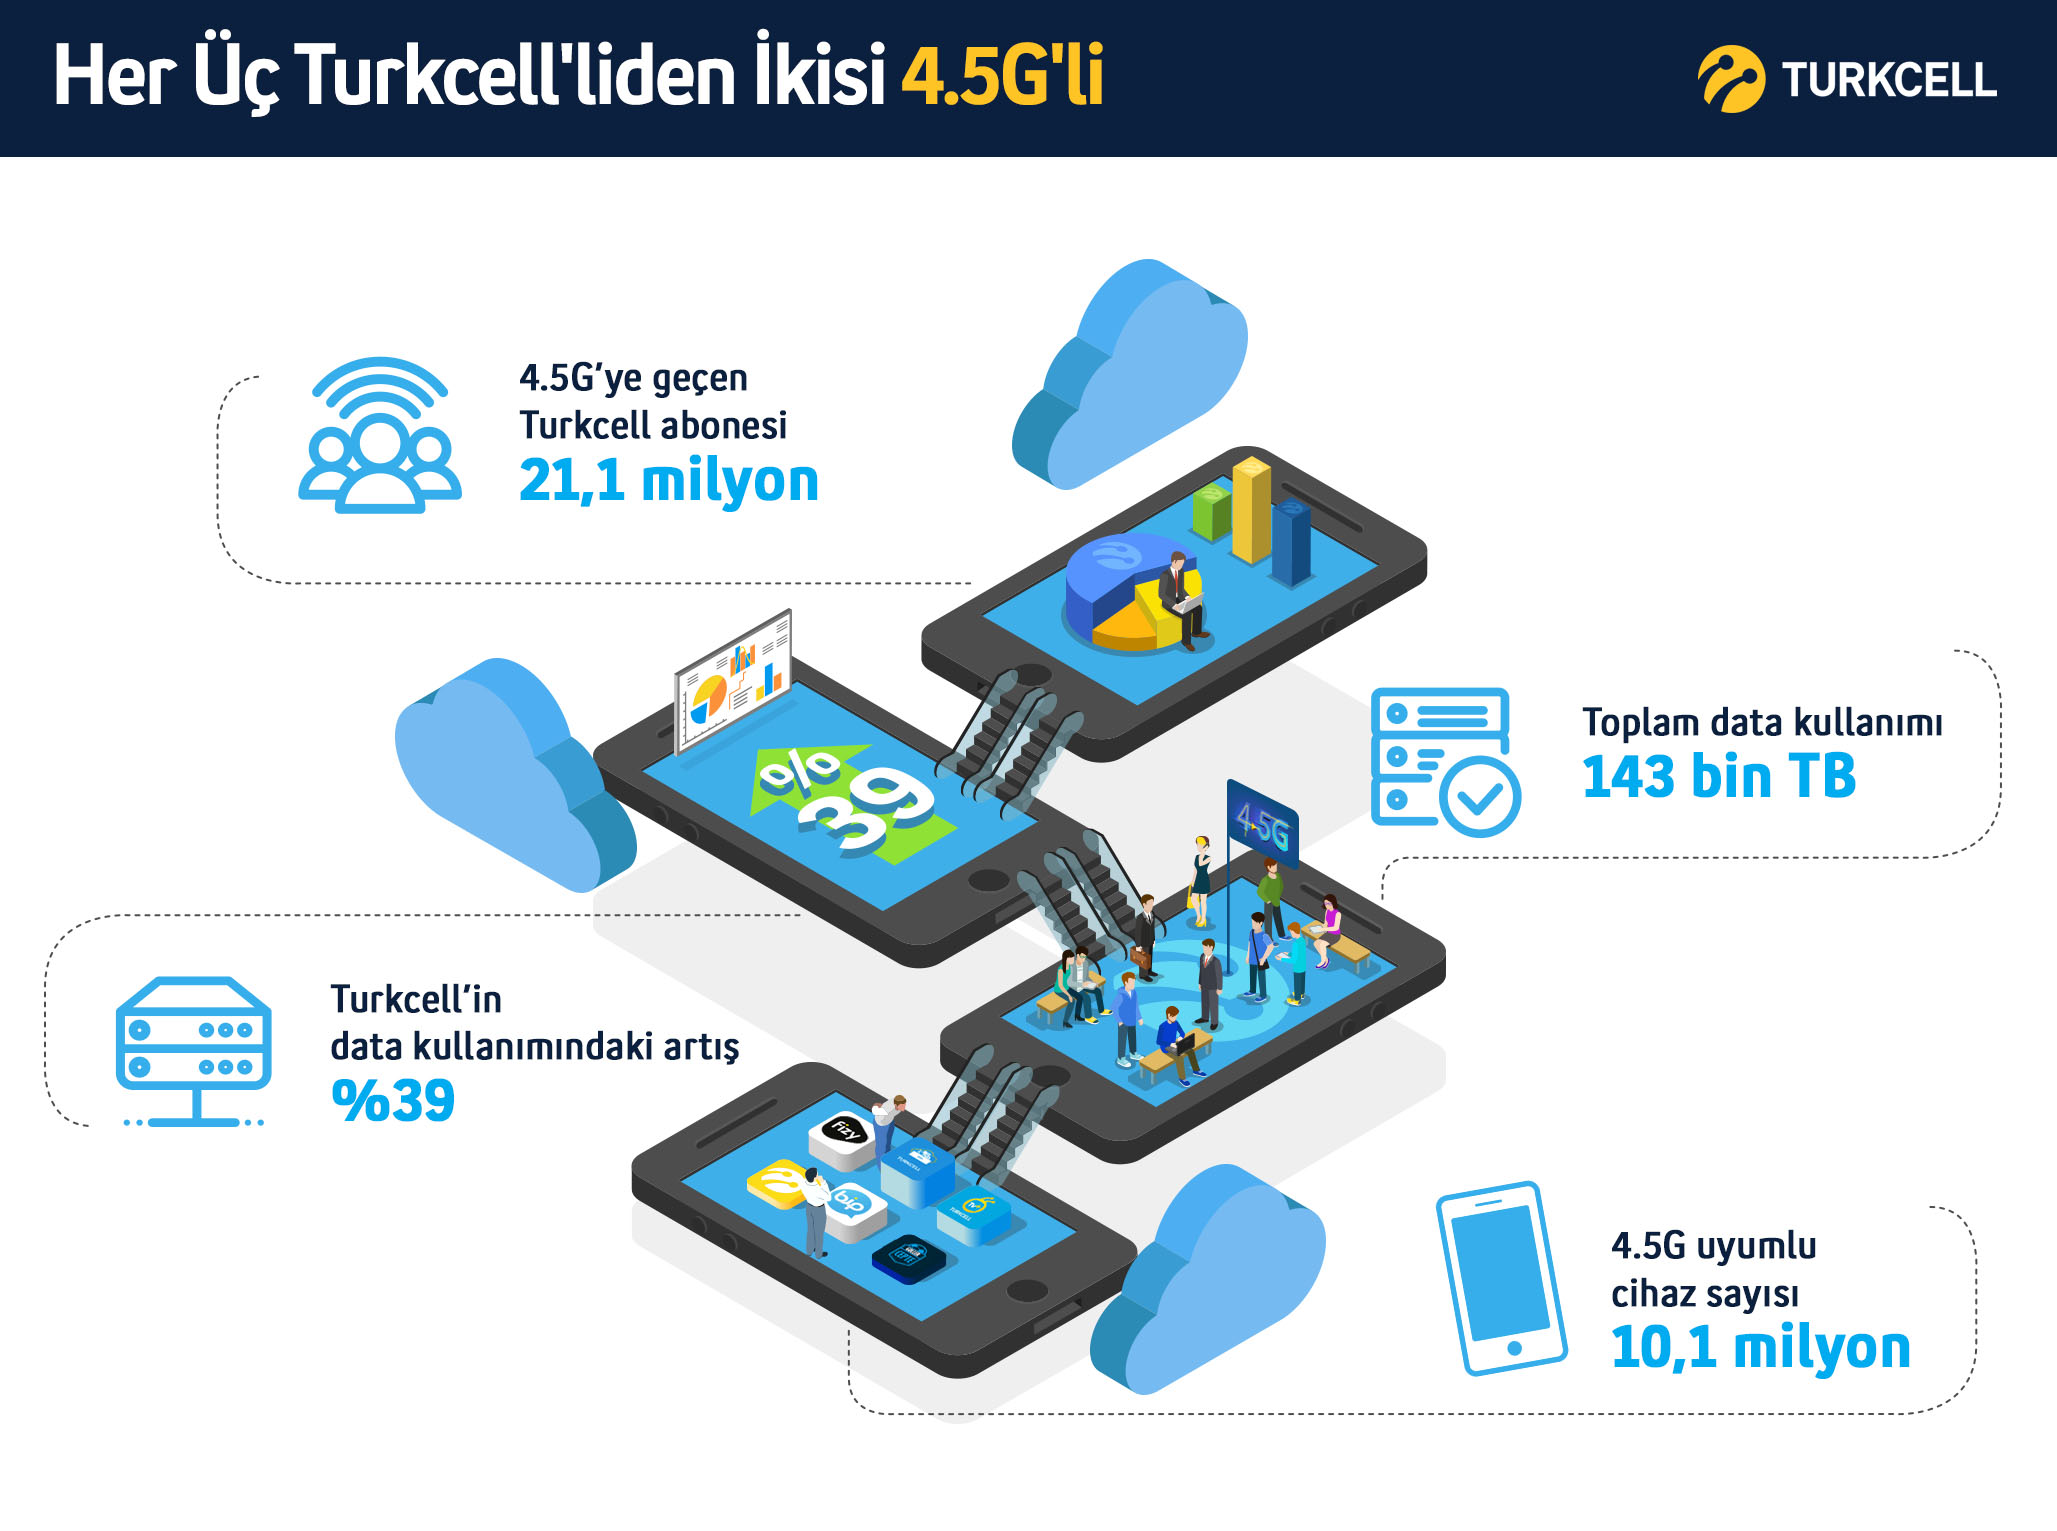 Turkcell 4.5G